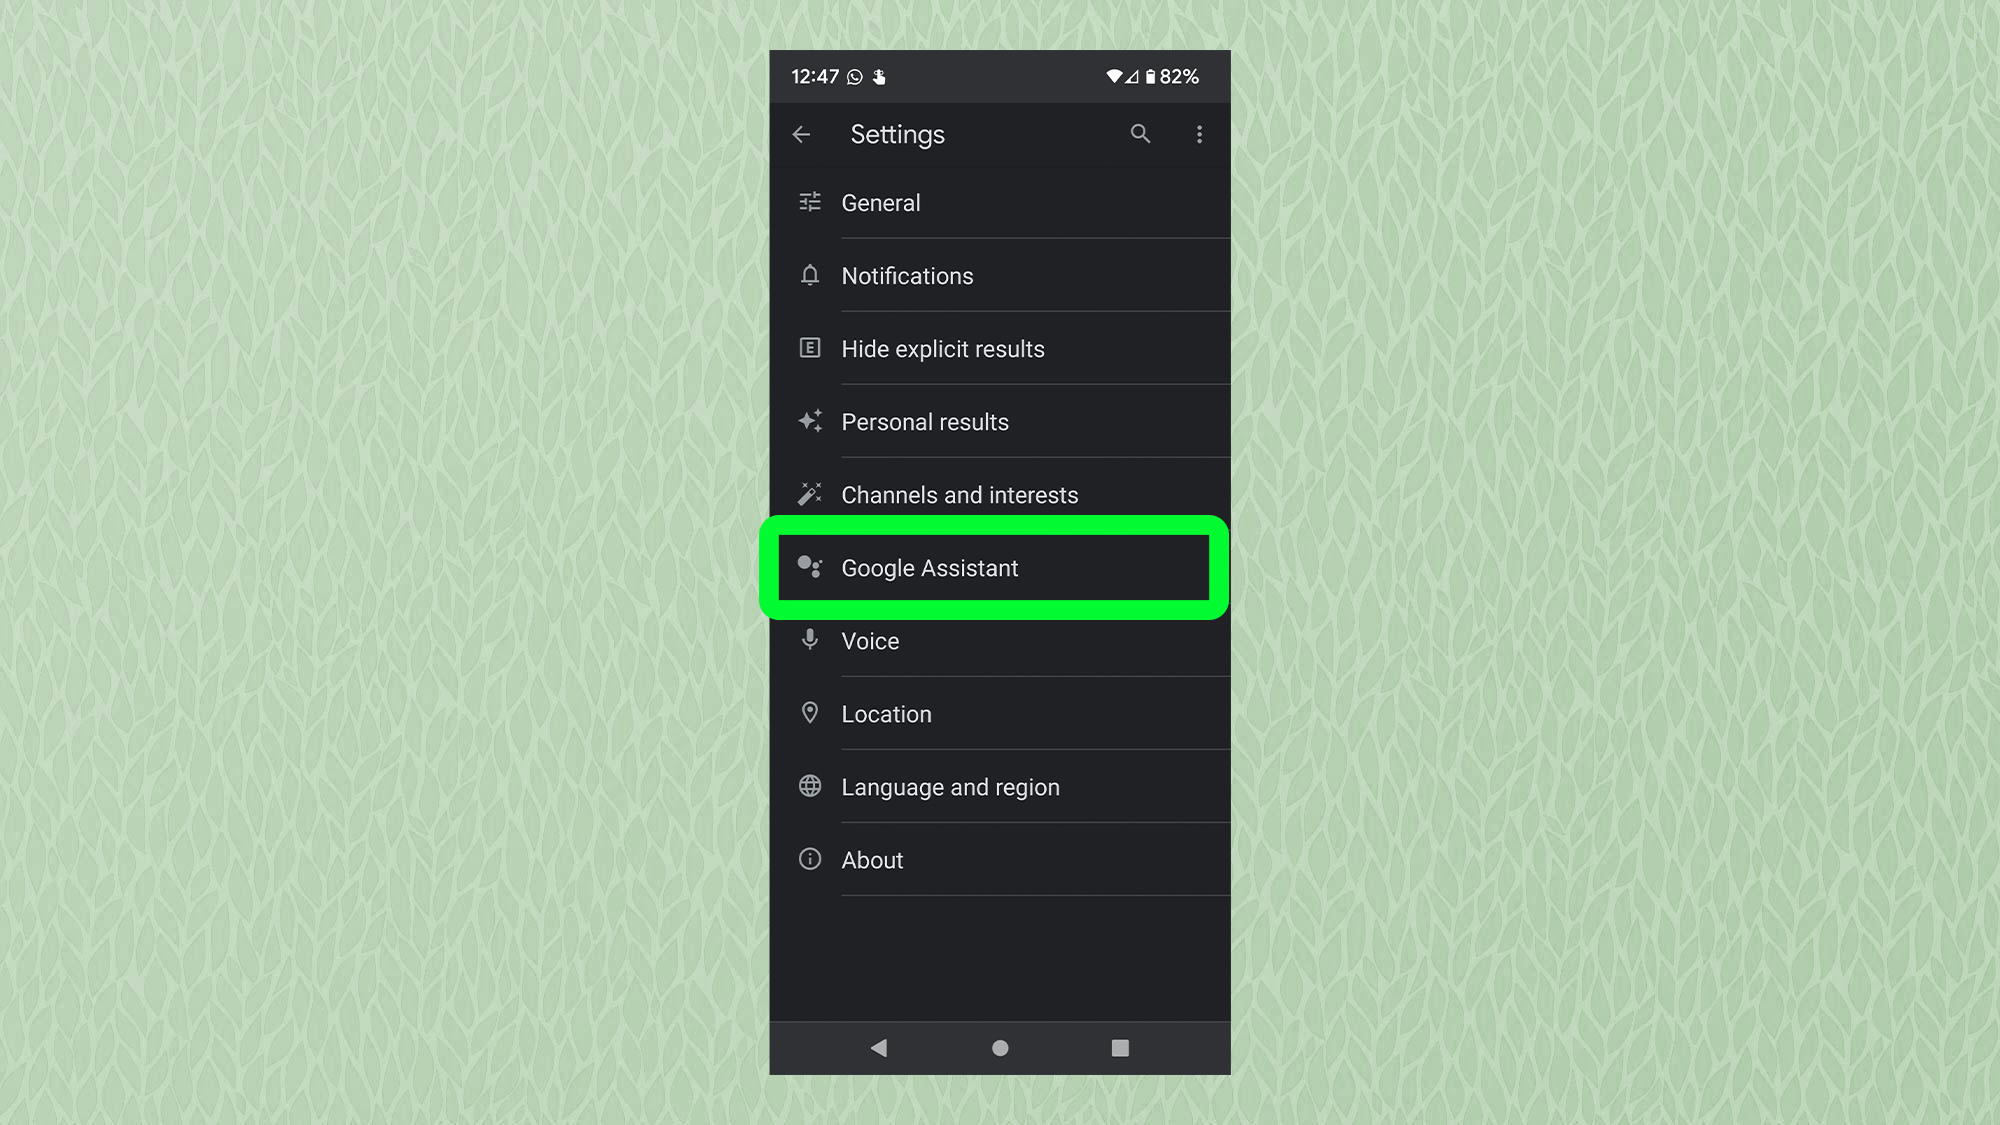 Снимок экрана с Android, показывающий меню настроек Google с выделенным Google Assistant